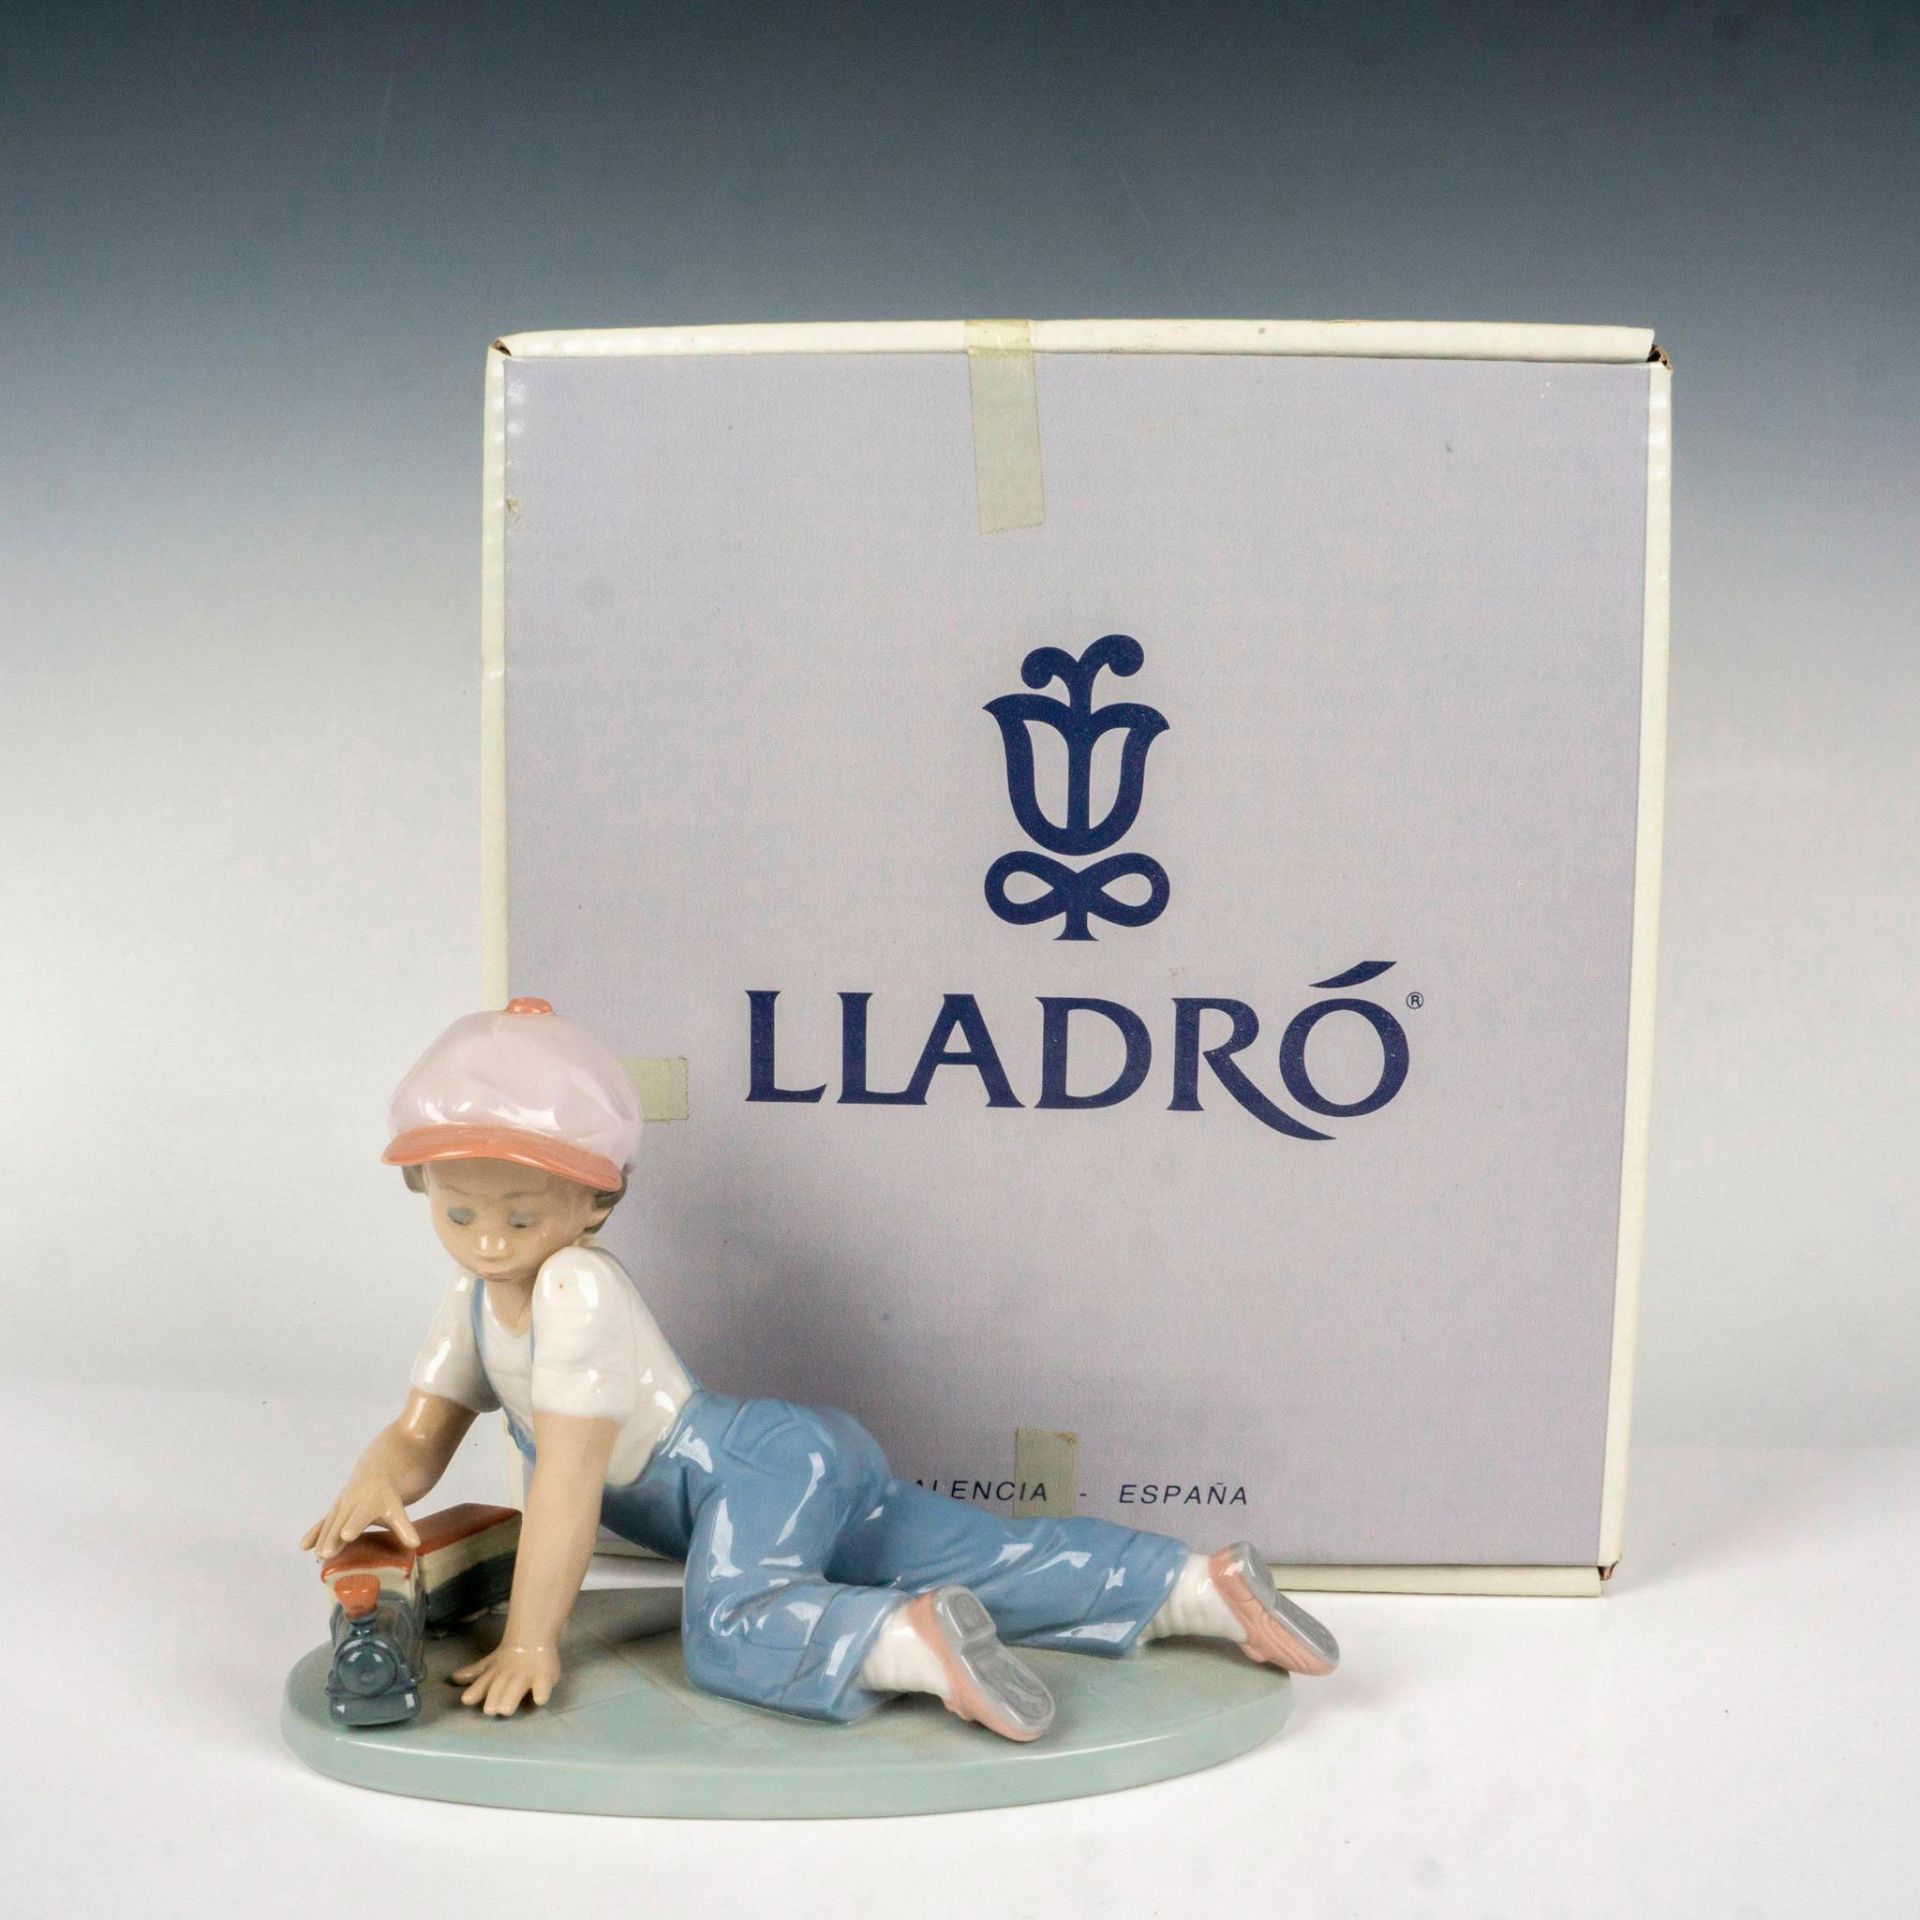 All Aboard 1007619 - Lladro Porcelain Figurine - Bild 4 aus 4